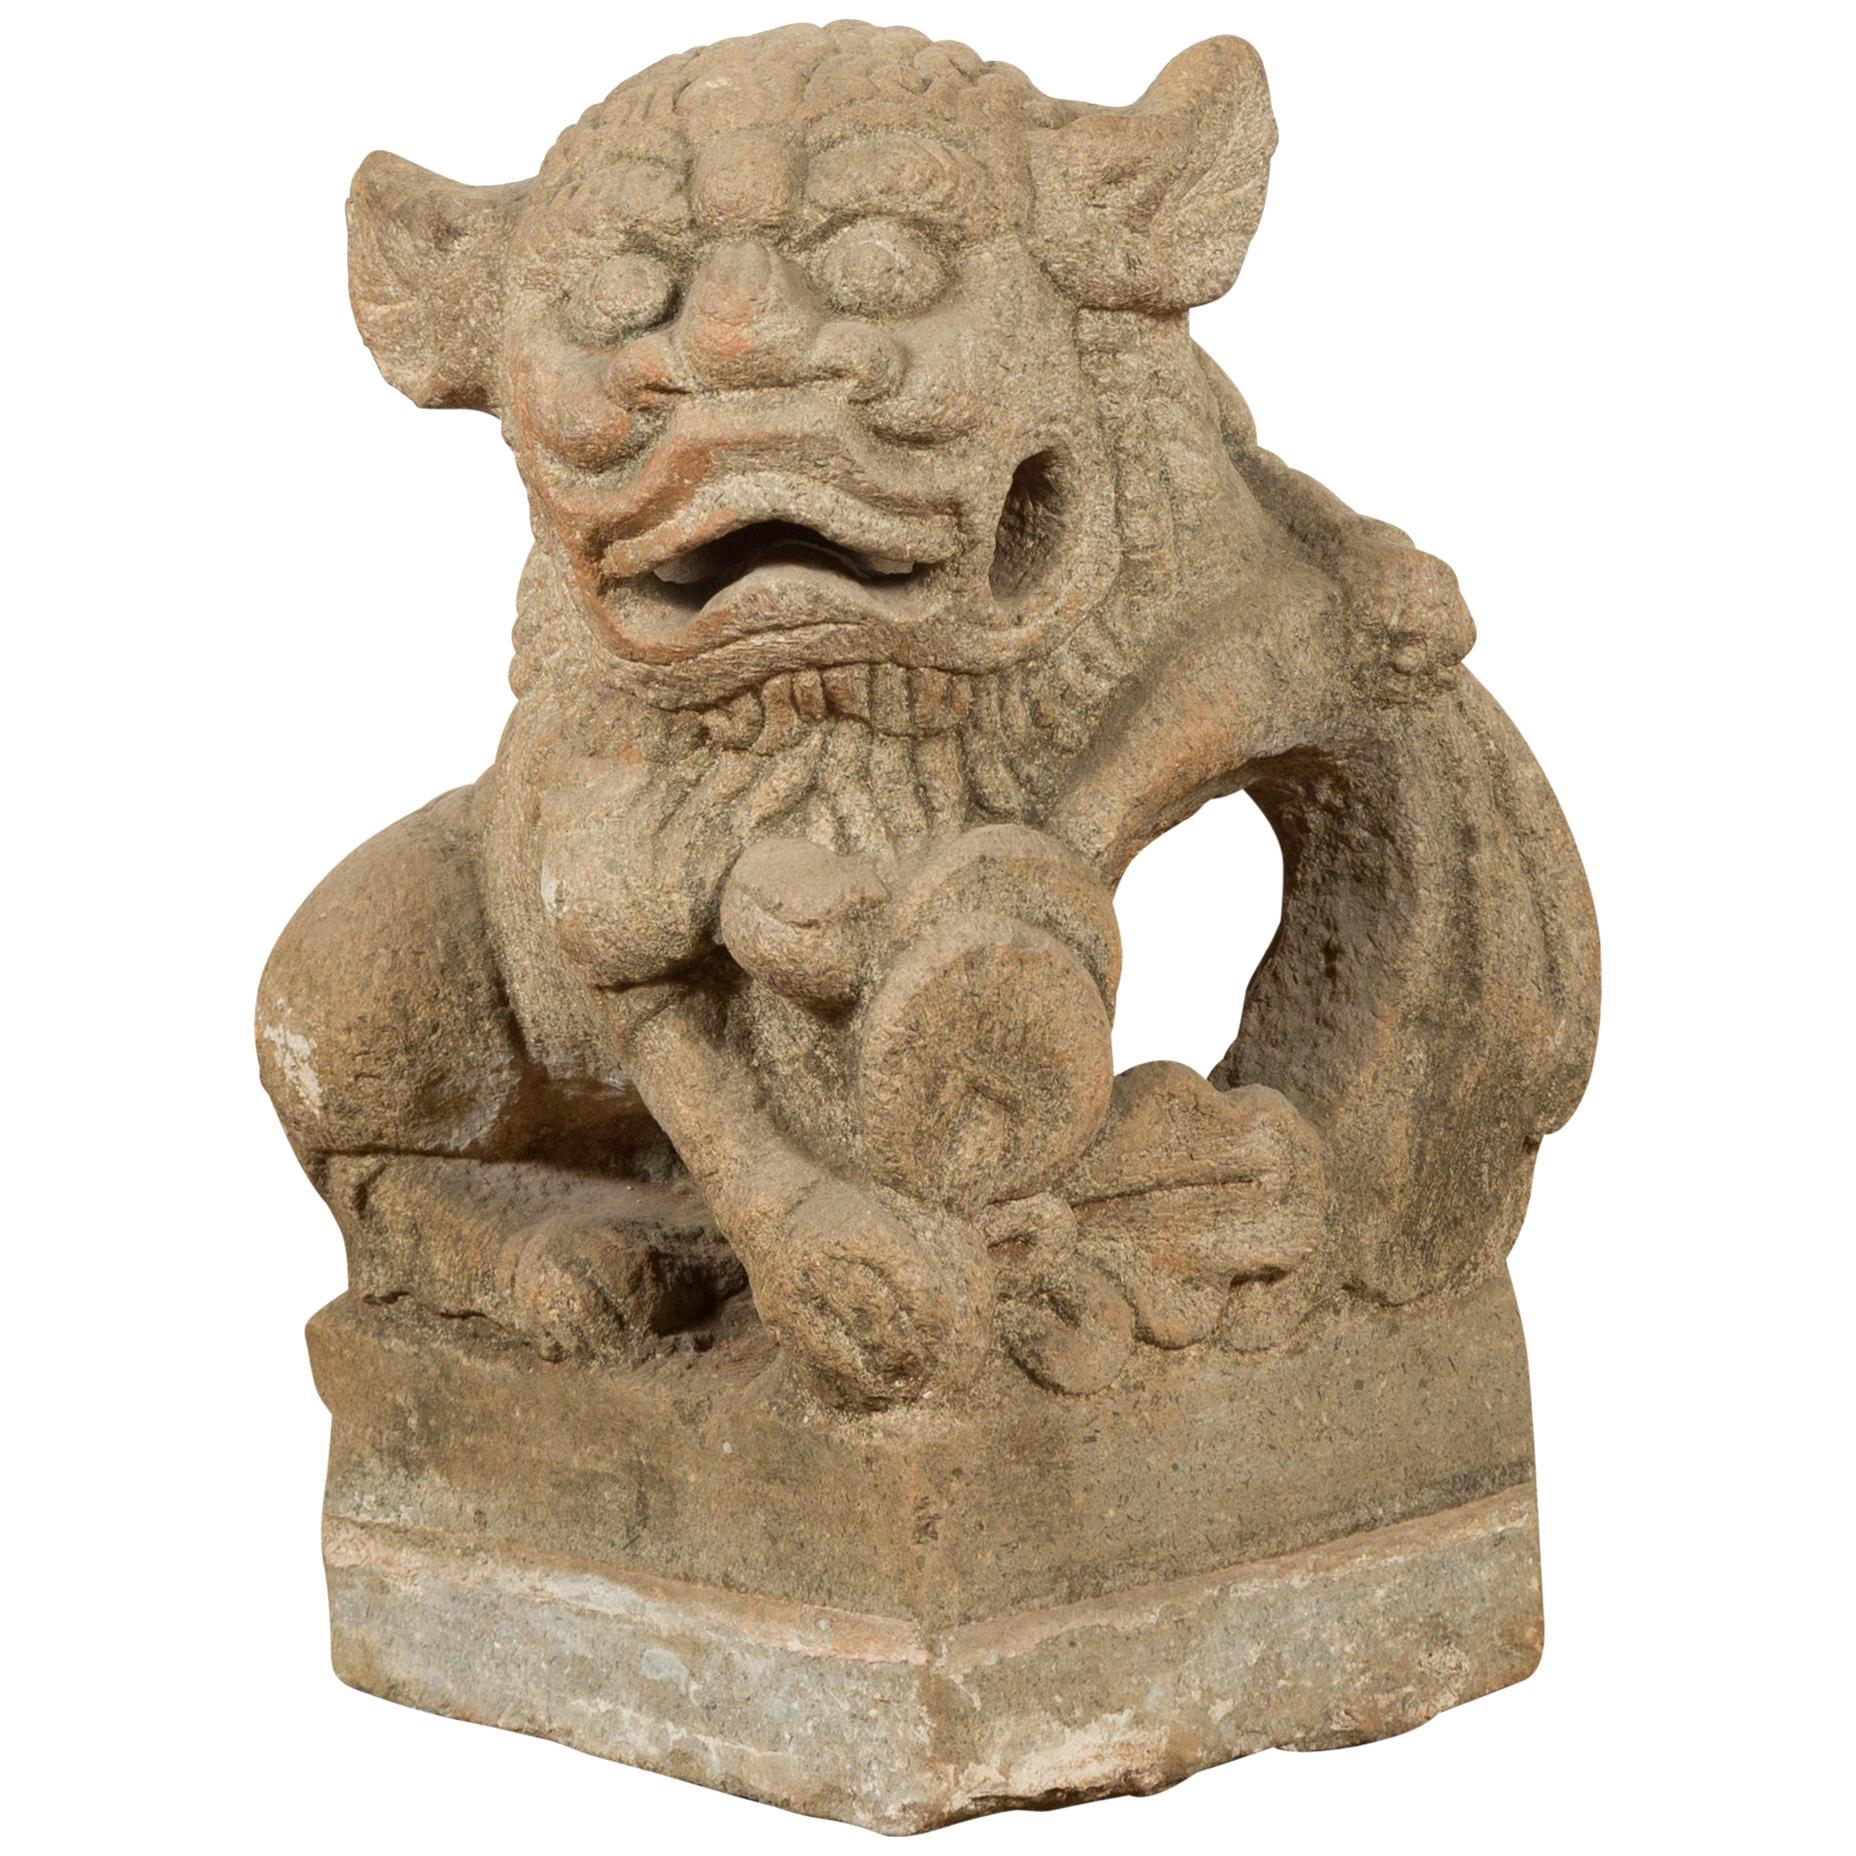 Chinesische geschnitzte Löwen-Skulptur aus Stein aus der chinesischen Qing-Dynastie des 19. Jahrhunderts